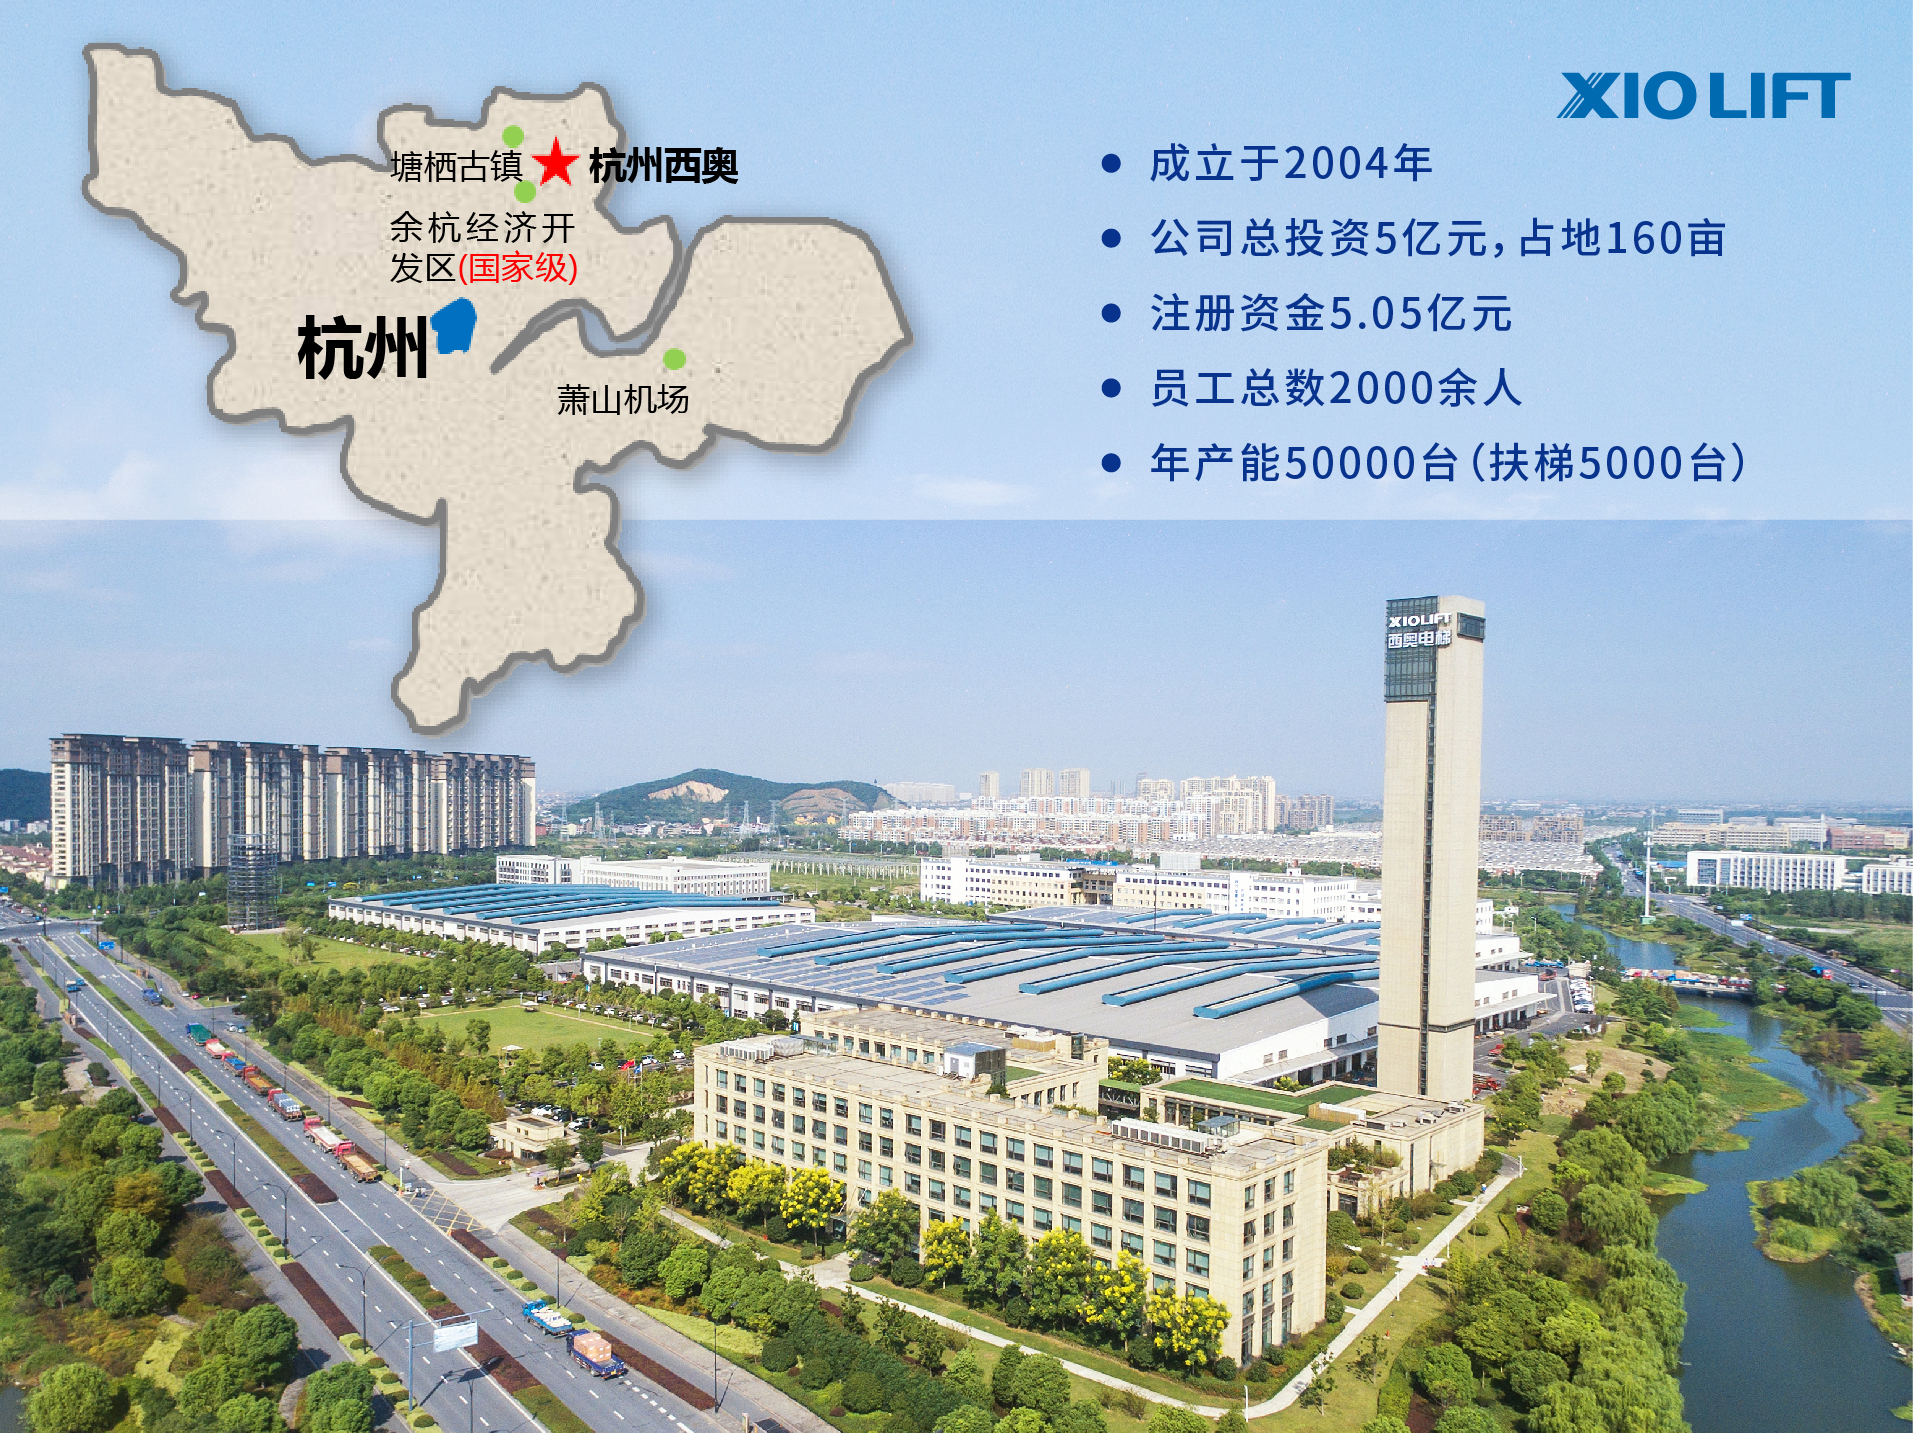 杭州西奥电梯有限公司在2004年成立于中国杭州,是一家集电梯整机研发